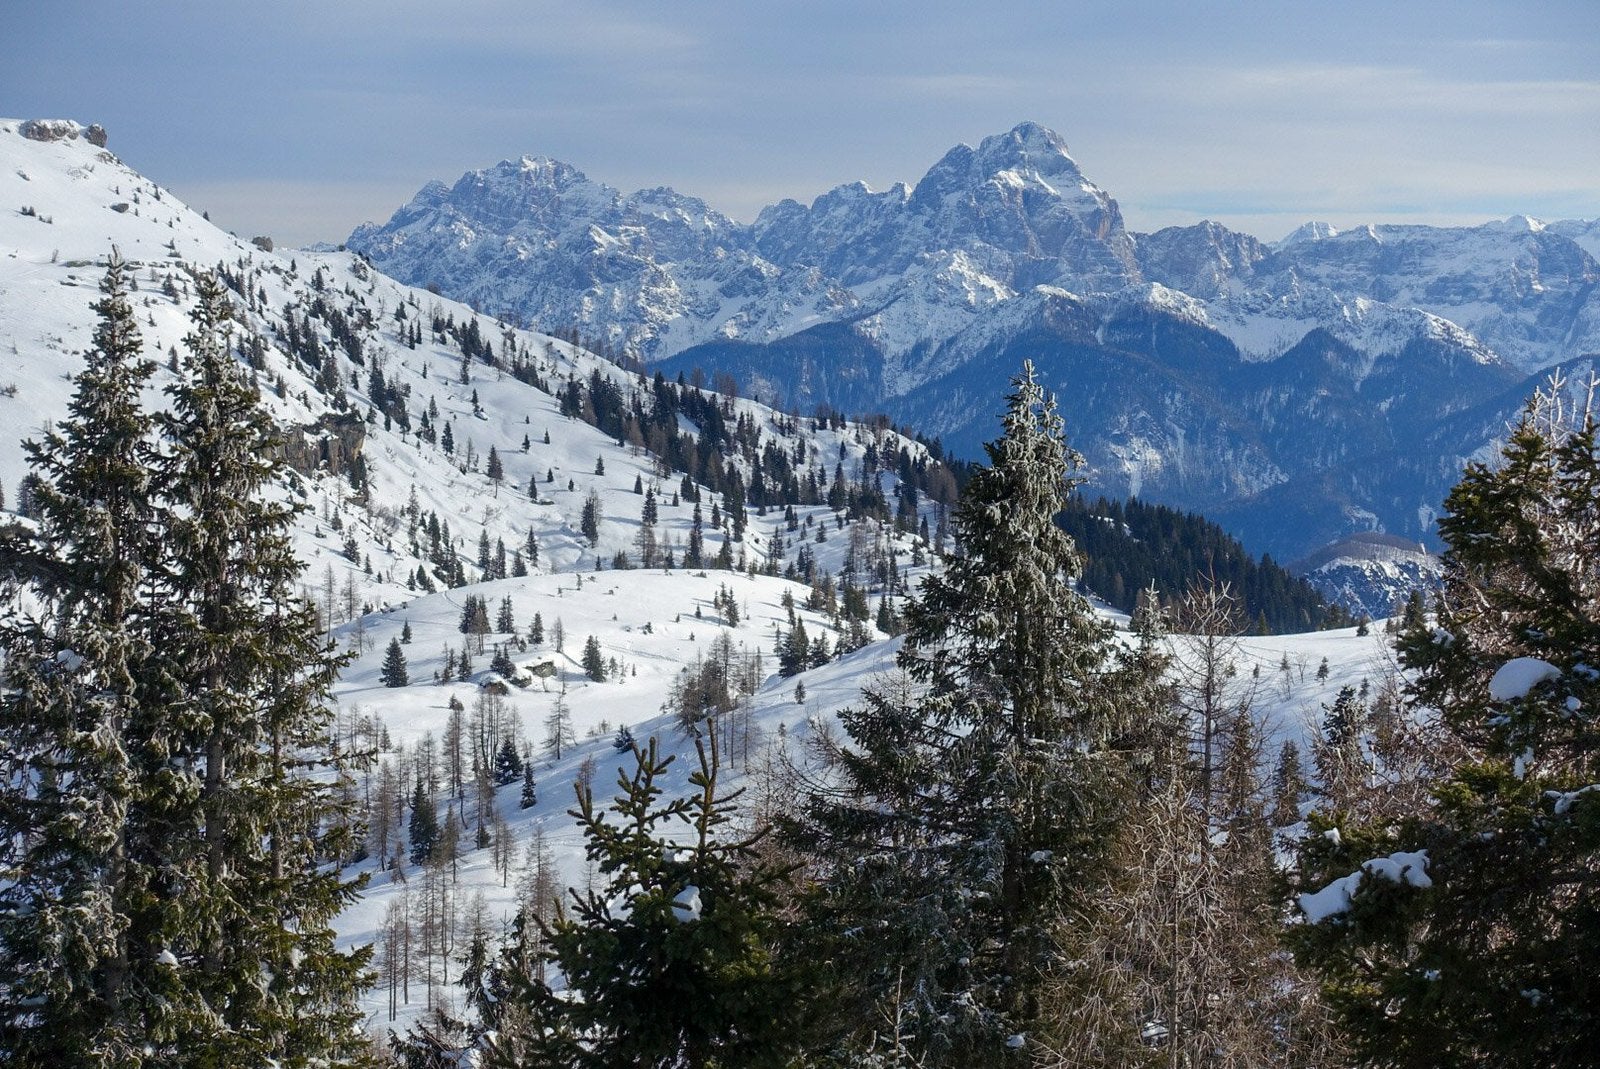 A photo of the snowy Italian Alps.